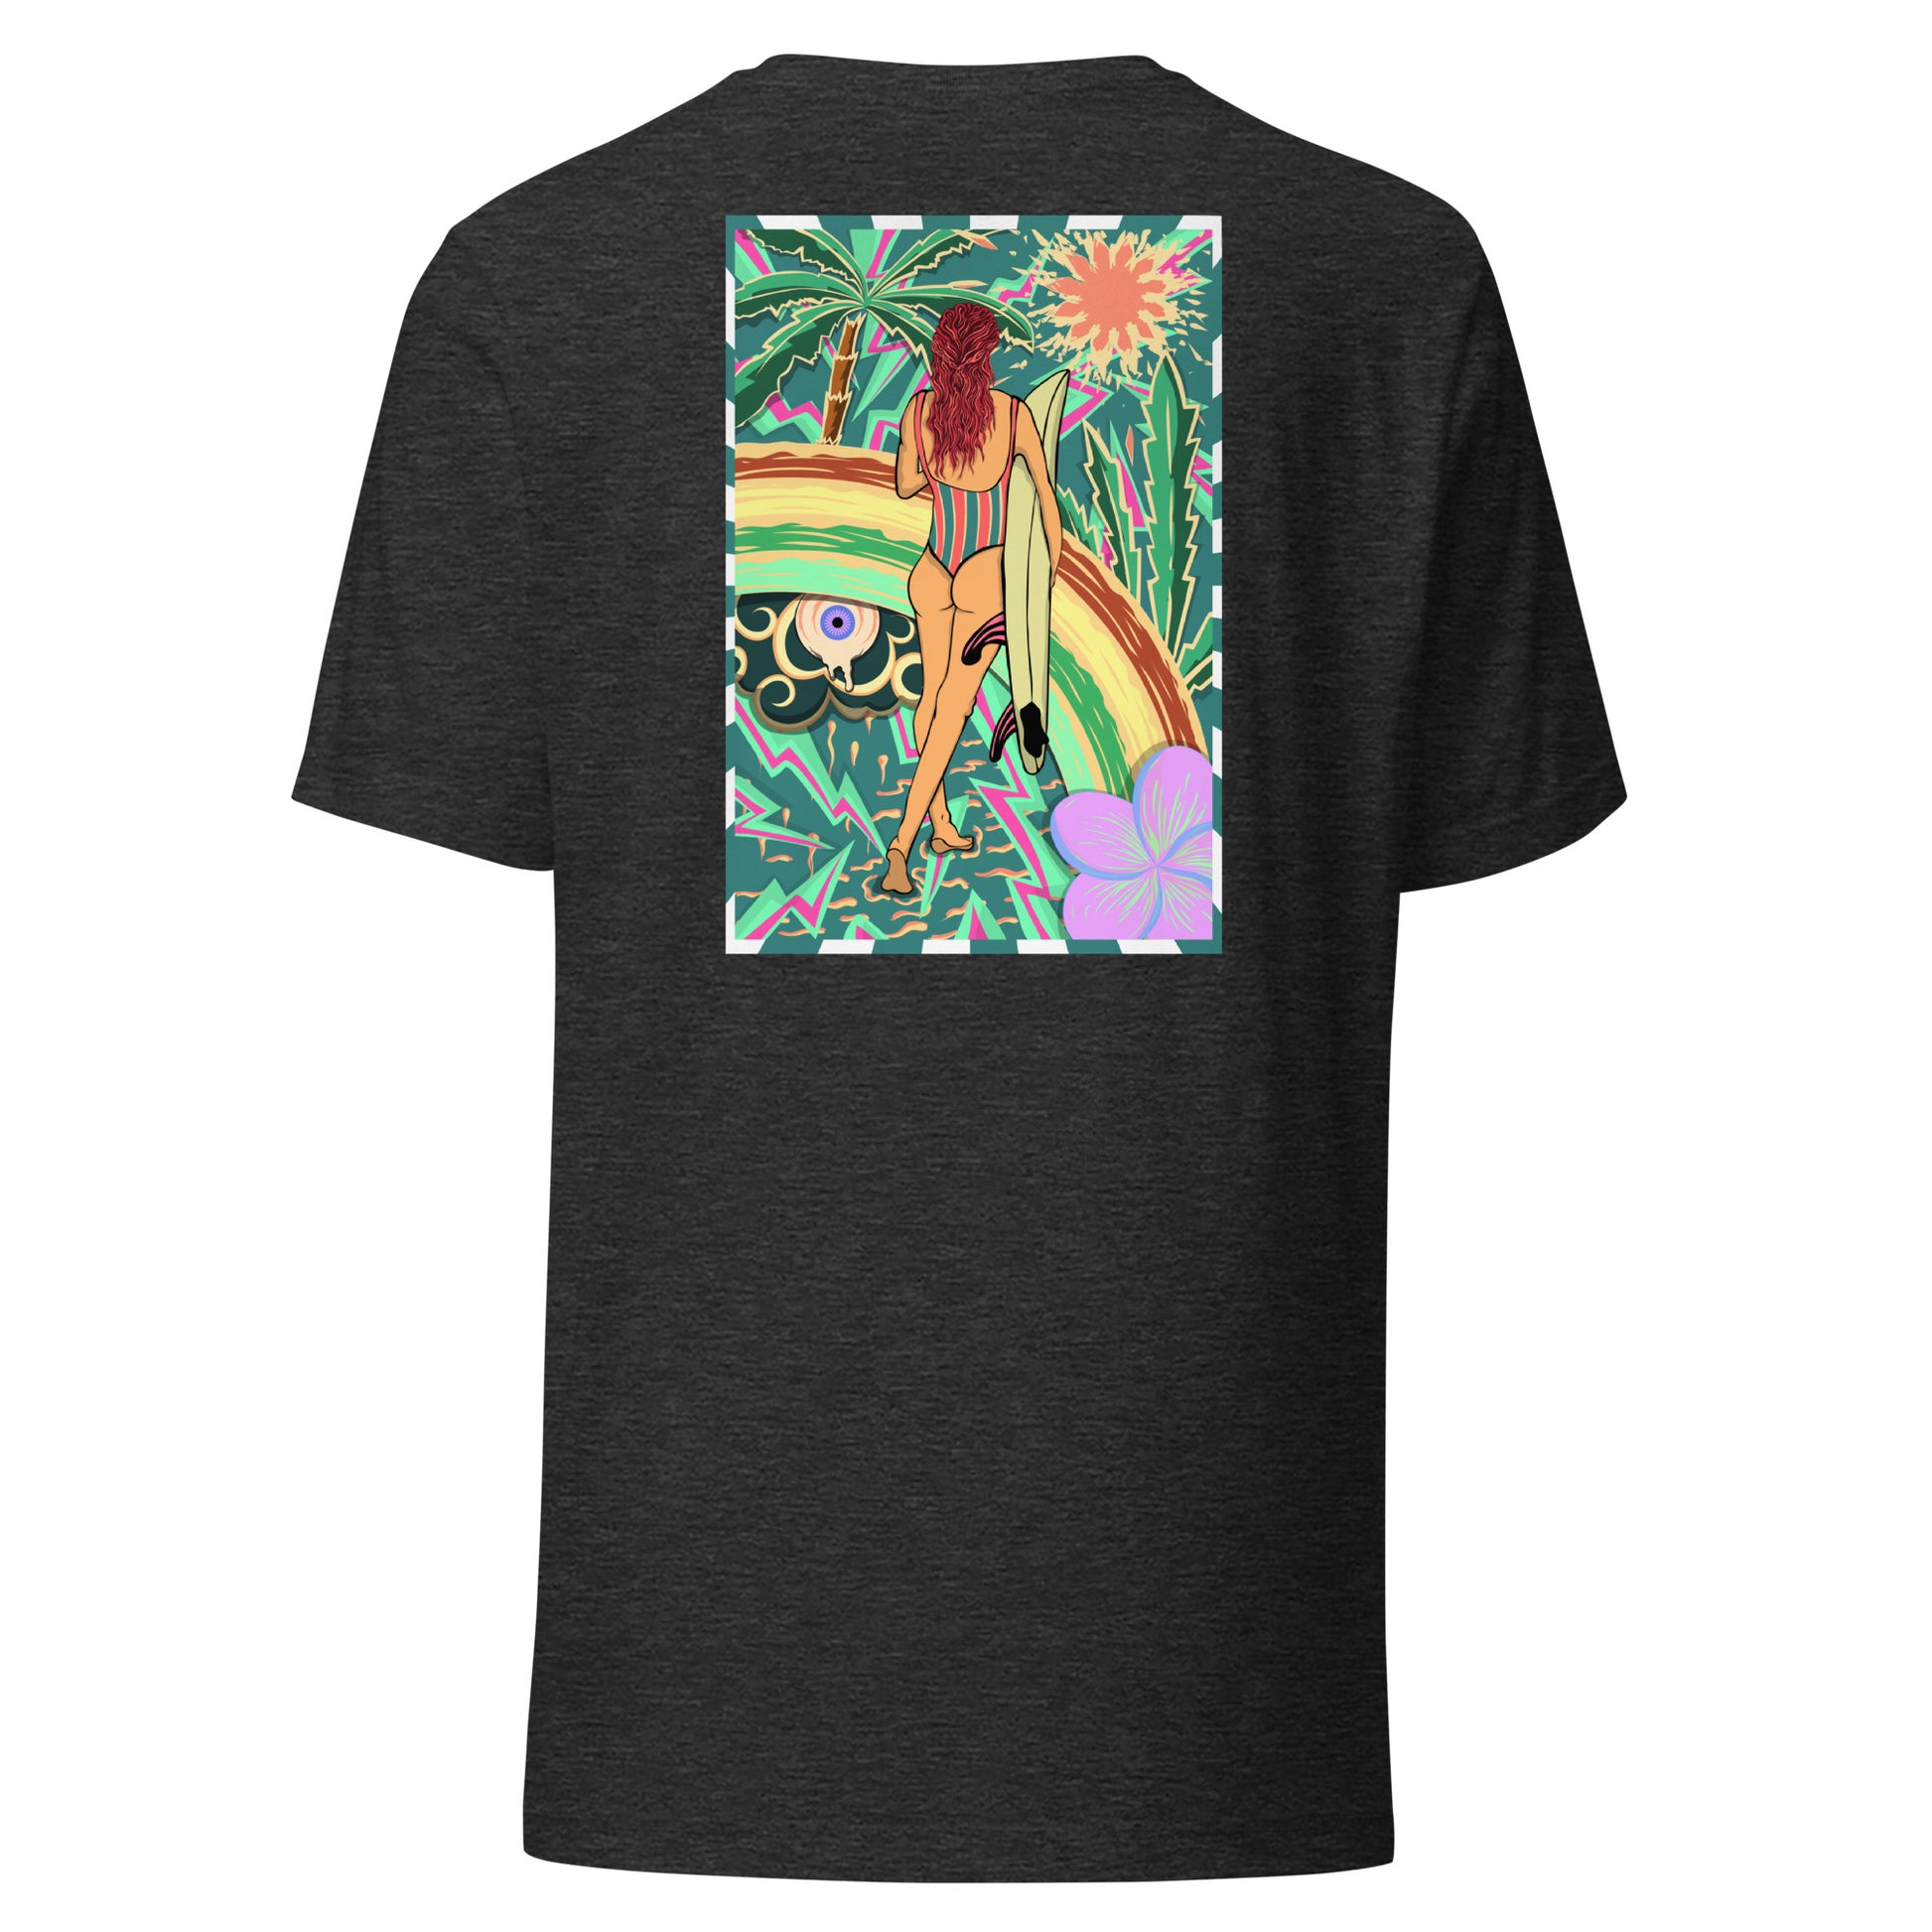 T-shirt surf vintage Walk Of Life surfeuse coloré hippie avec des palmier, fleur, arc en ciel et œil psychédélique. Tshirt dos gris foncé